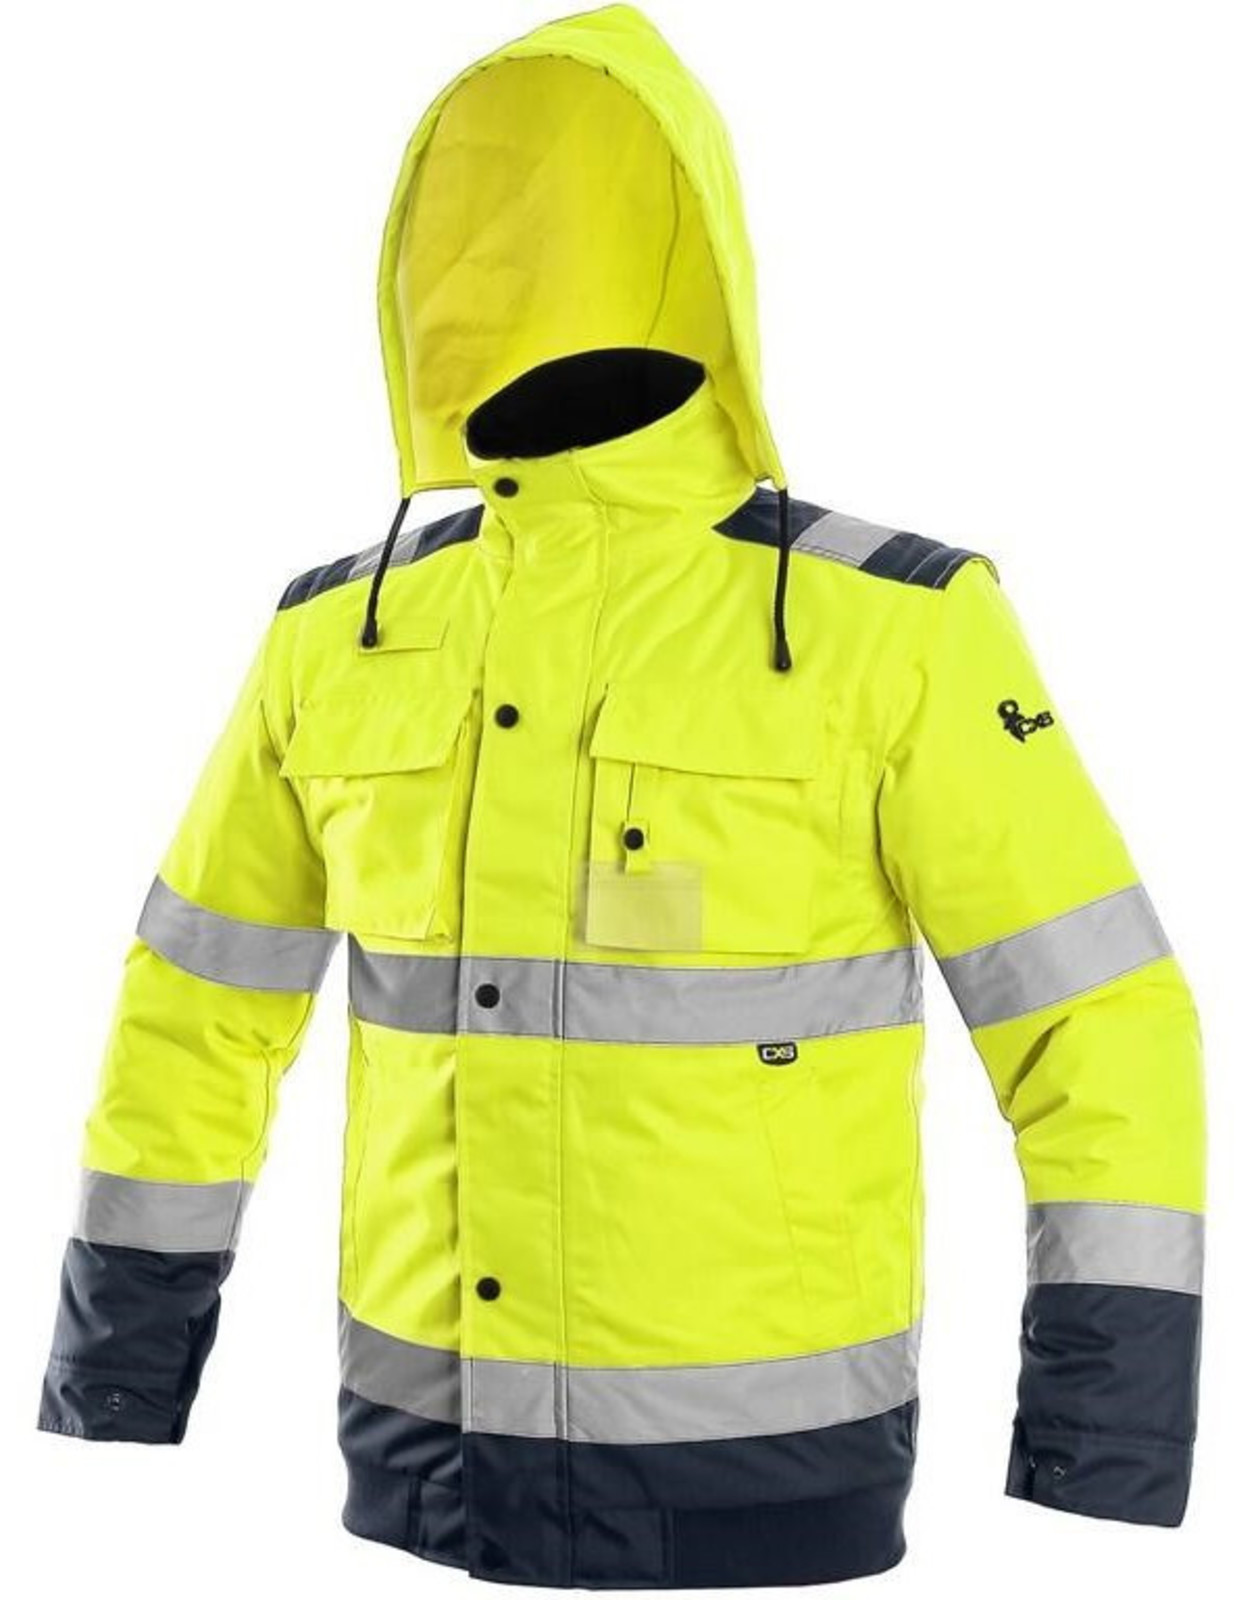 Zimná reflexná bunda CXS Luton 2v1 - veľkosť: XXL, farba: žltá/navy